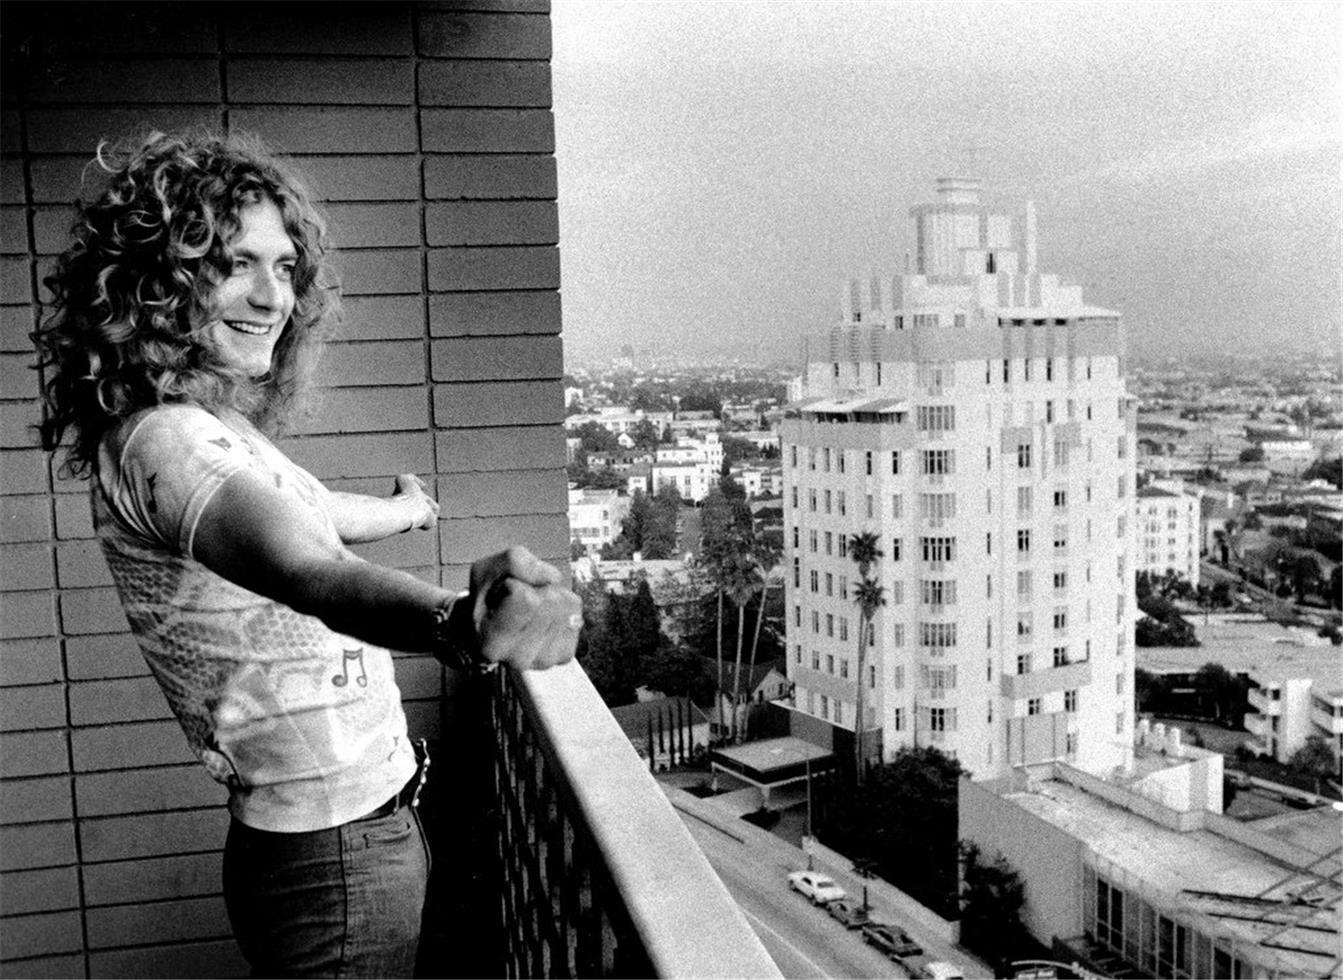 Peter Simon Portrait Photograph - Robert Plant, Led Zeppelin, Sunset Strip, Los Angeles, CA, 1975